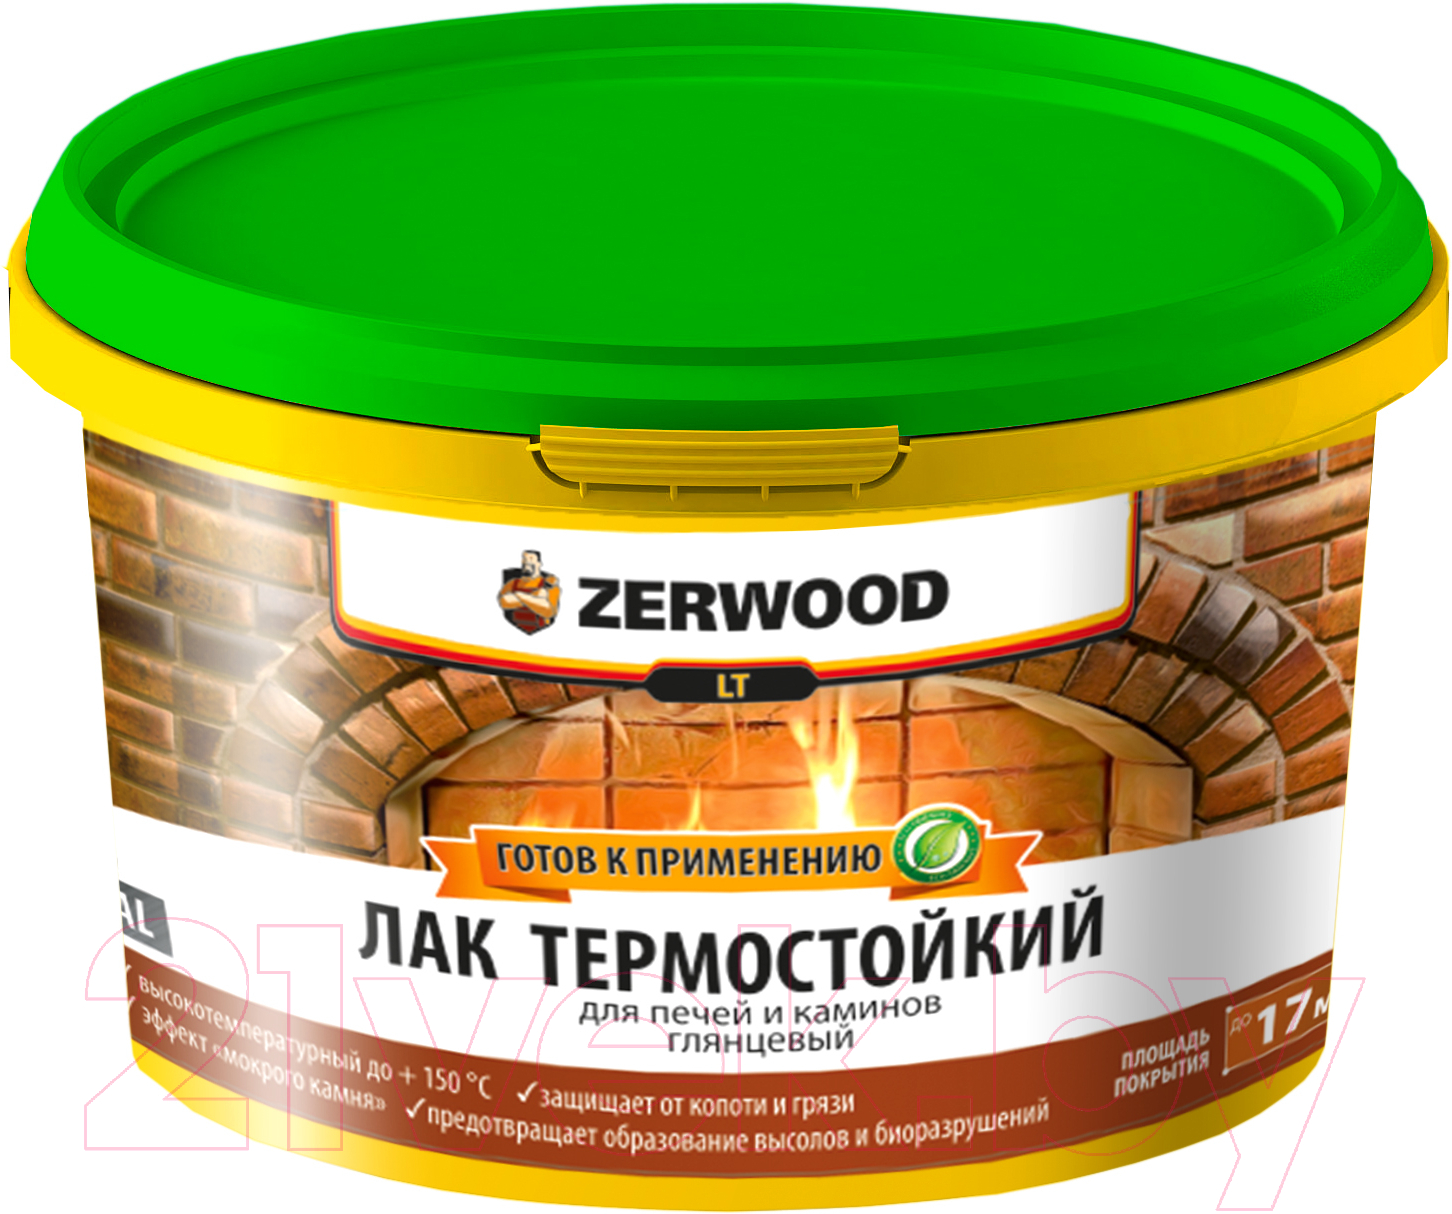 Лак Zerwood LT Термостойкий для печей и каминов